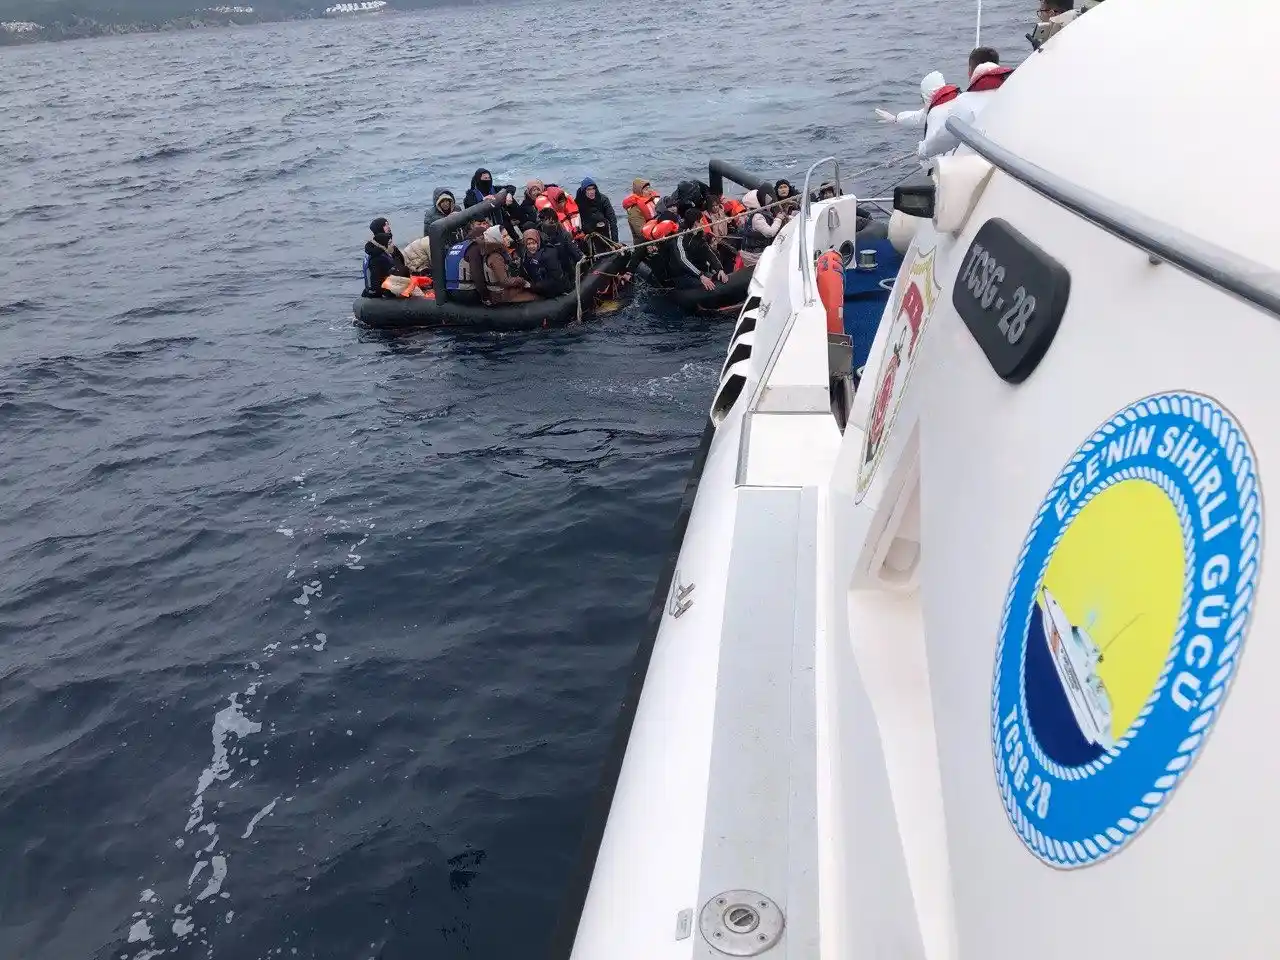 Yunan unsurlarınca ölüme terk edilen 94 kaçak göçmen kurtarıldı
